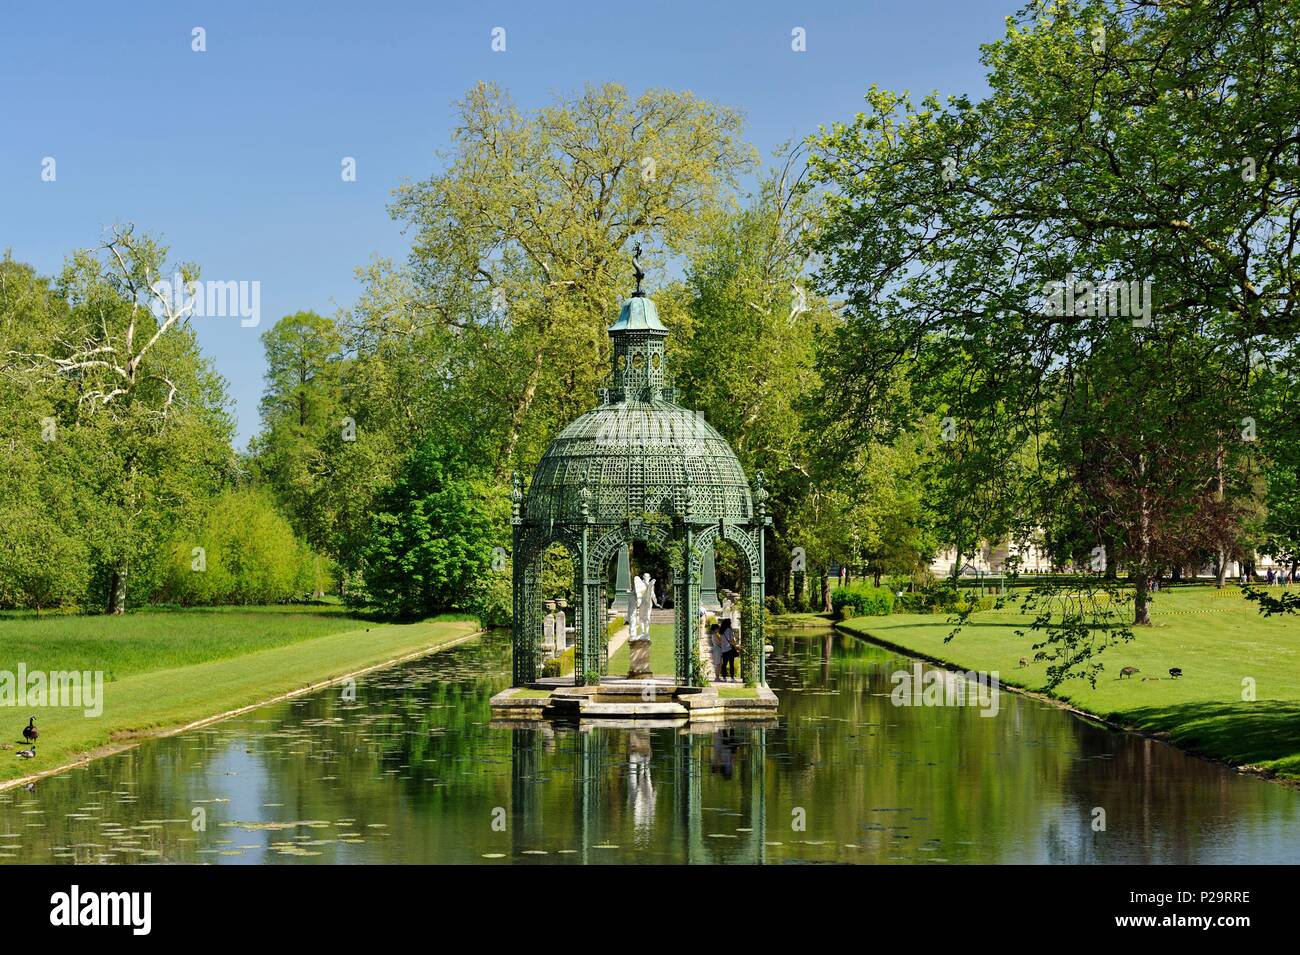 France, Oise, Chantilly, Chantilly, château de Chantilly, le Jardin Anglais conçu sous la Restauration en 1819 par l'architecte Victor Dubois, l'île d'amour Banque D'Images